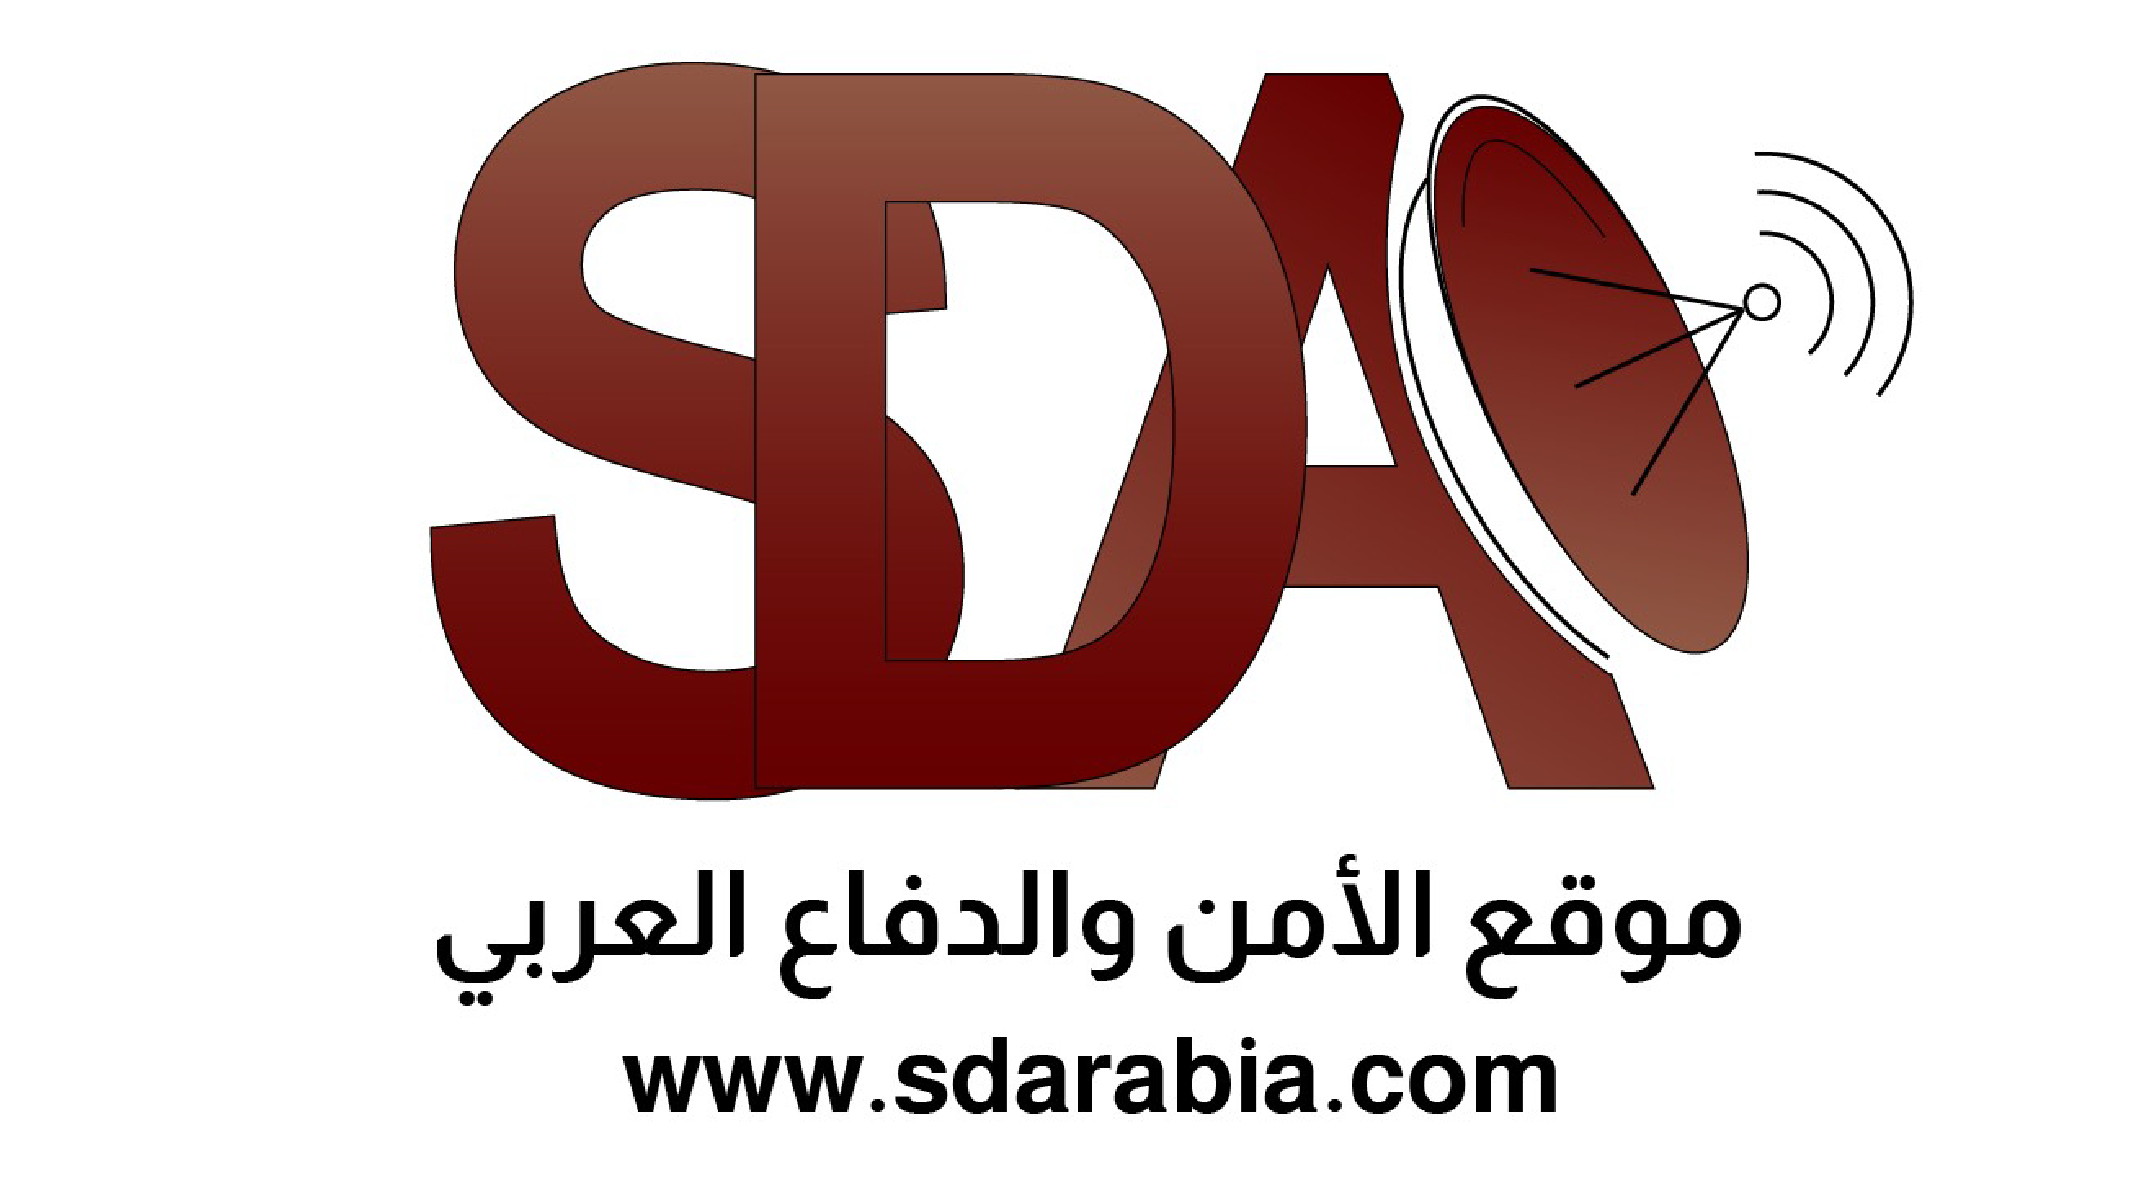 Security Defense Arabia